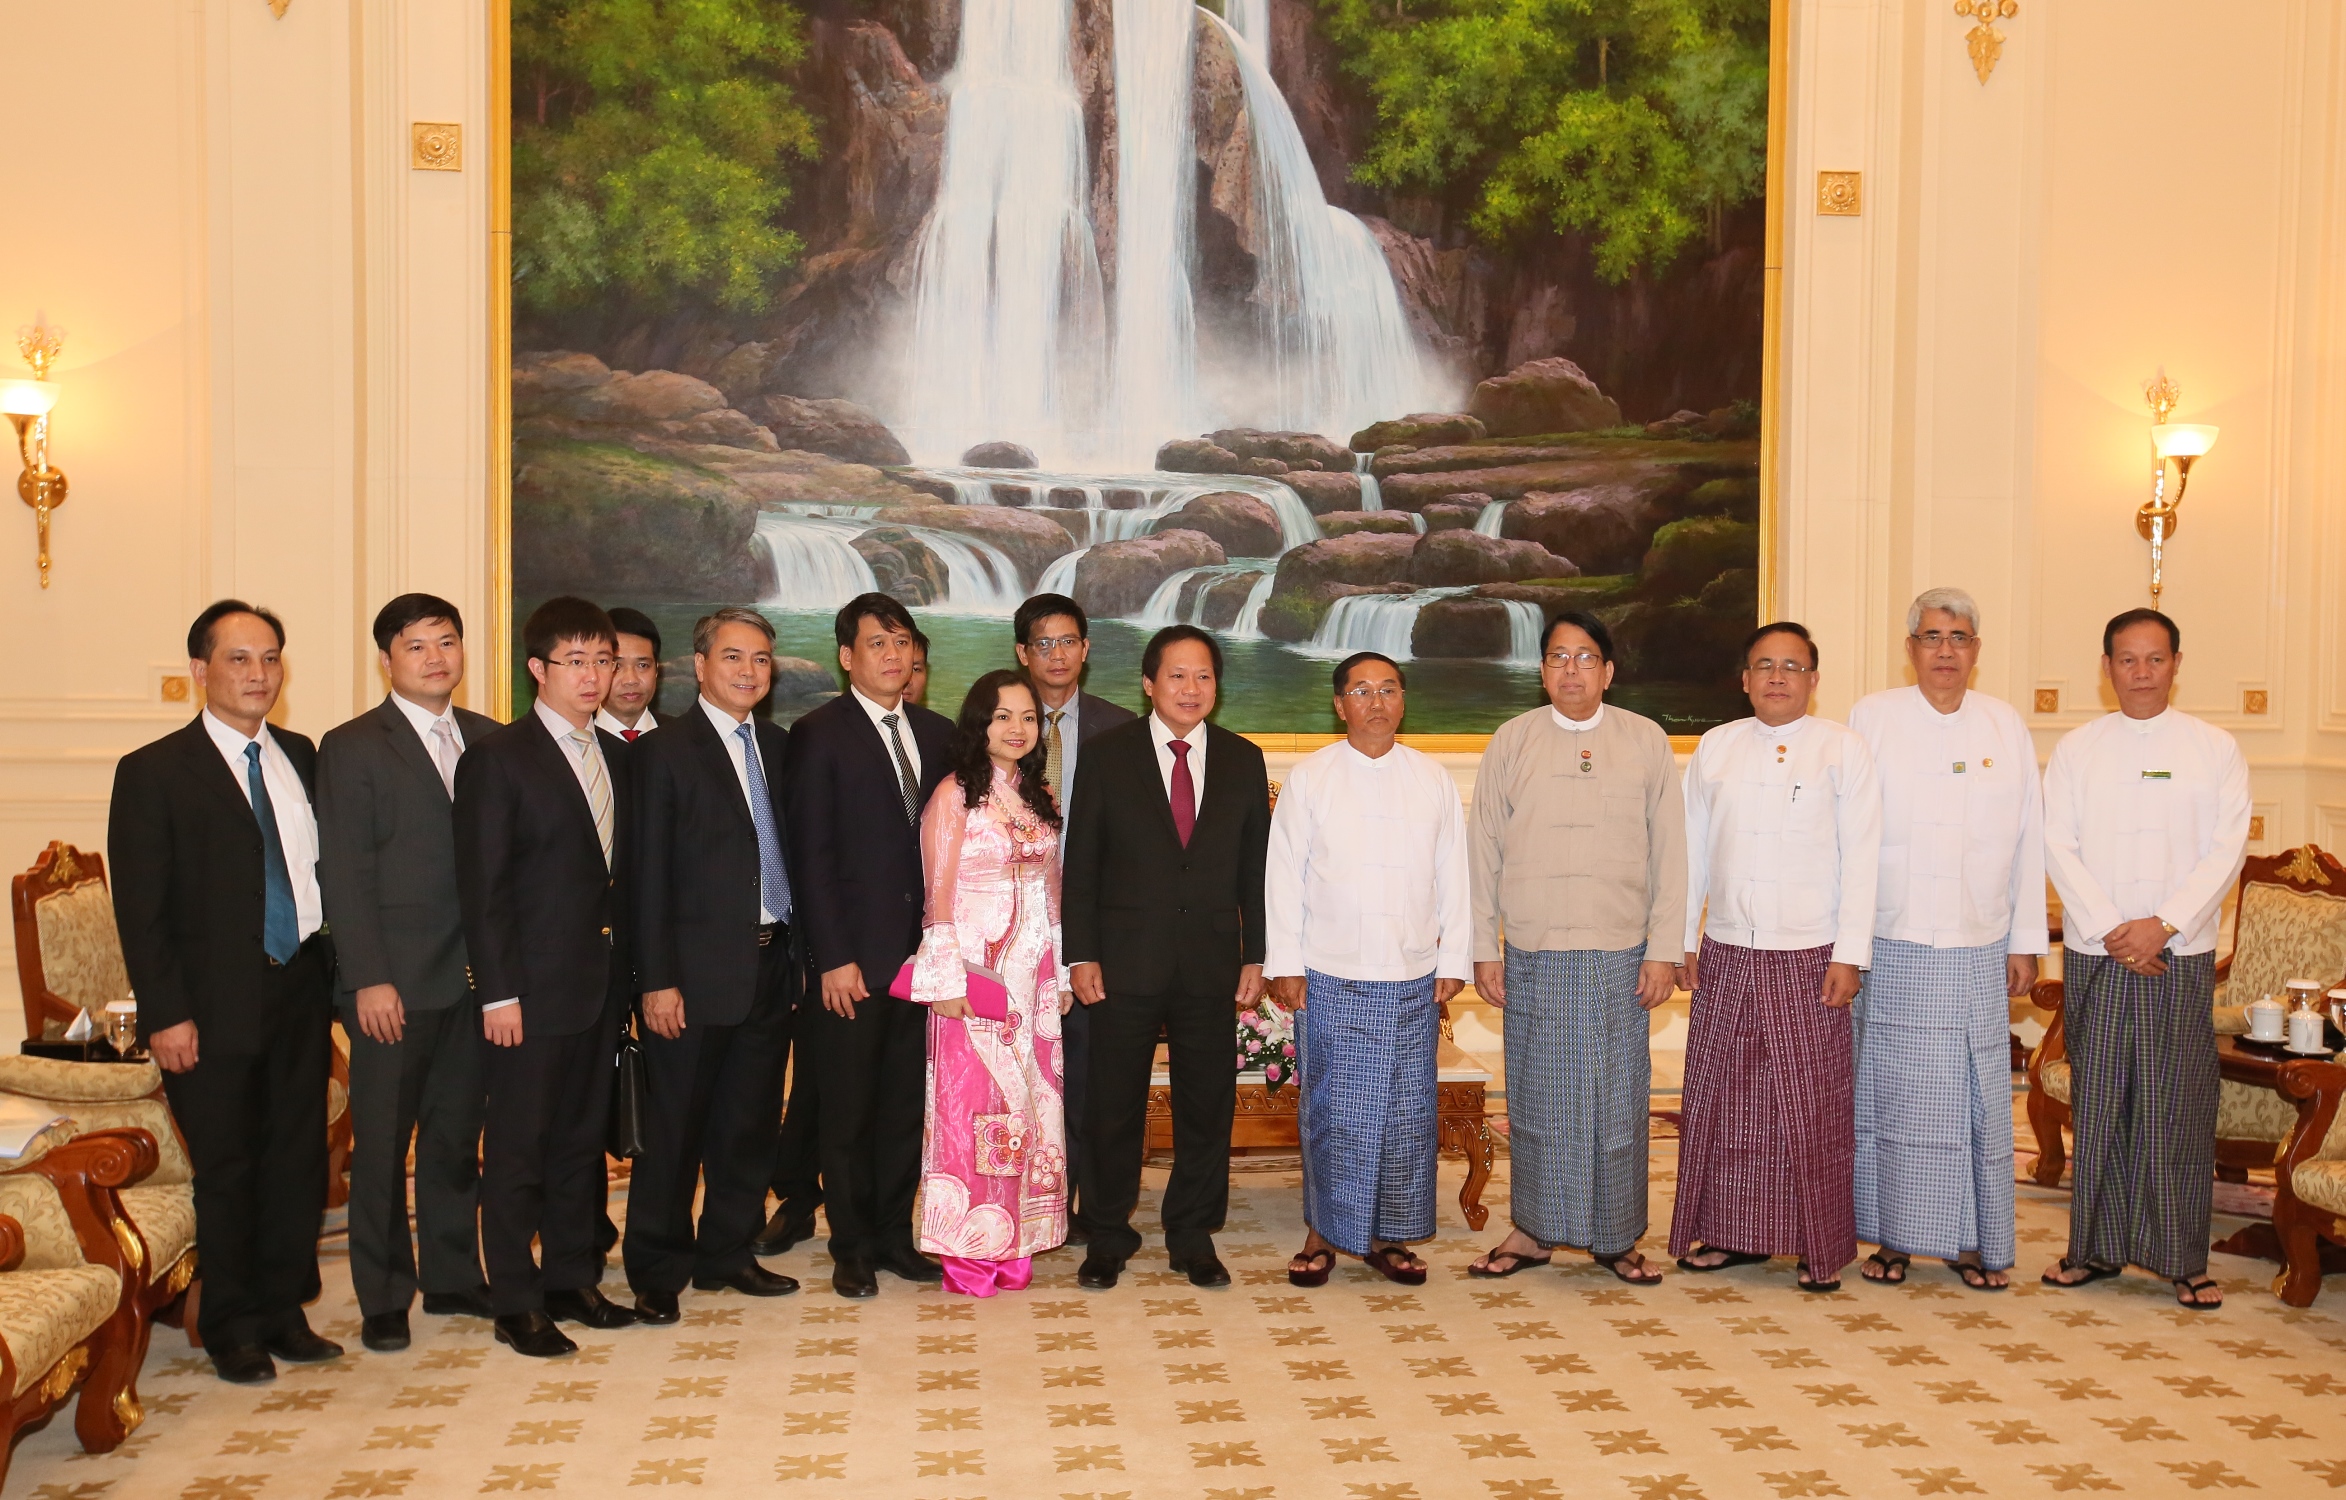 Đoàn công tác Bộ Thông tin và Truyền thông cùng Đại sứ Việt Nam tại Myanmar chụp ảnh lưu niệm với Phó Tổng thống Myint Swe và các thành viên chính phủ Myanmar.